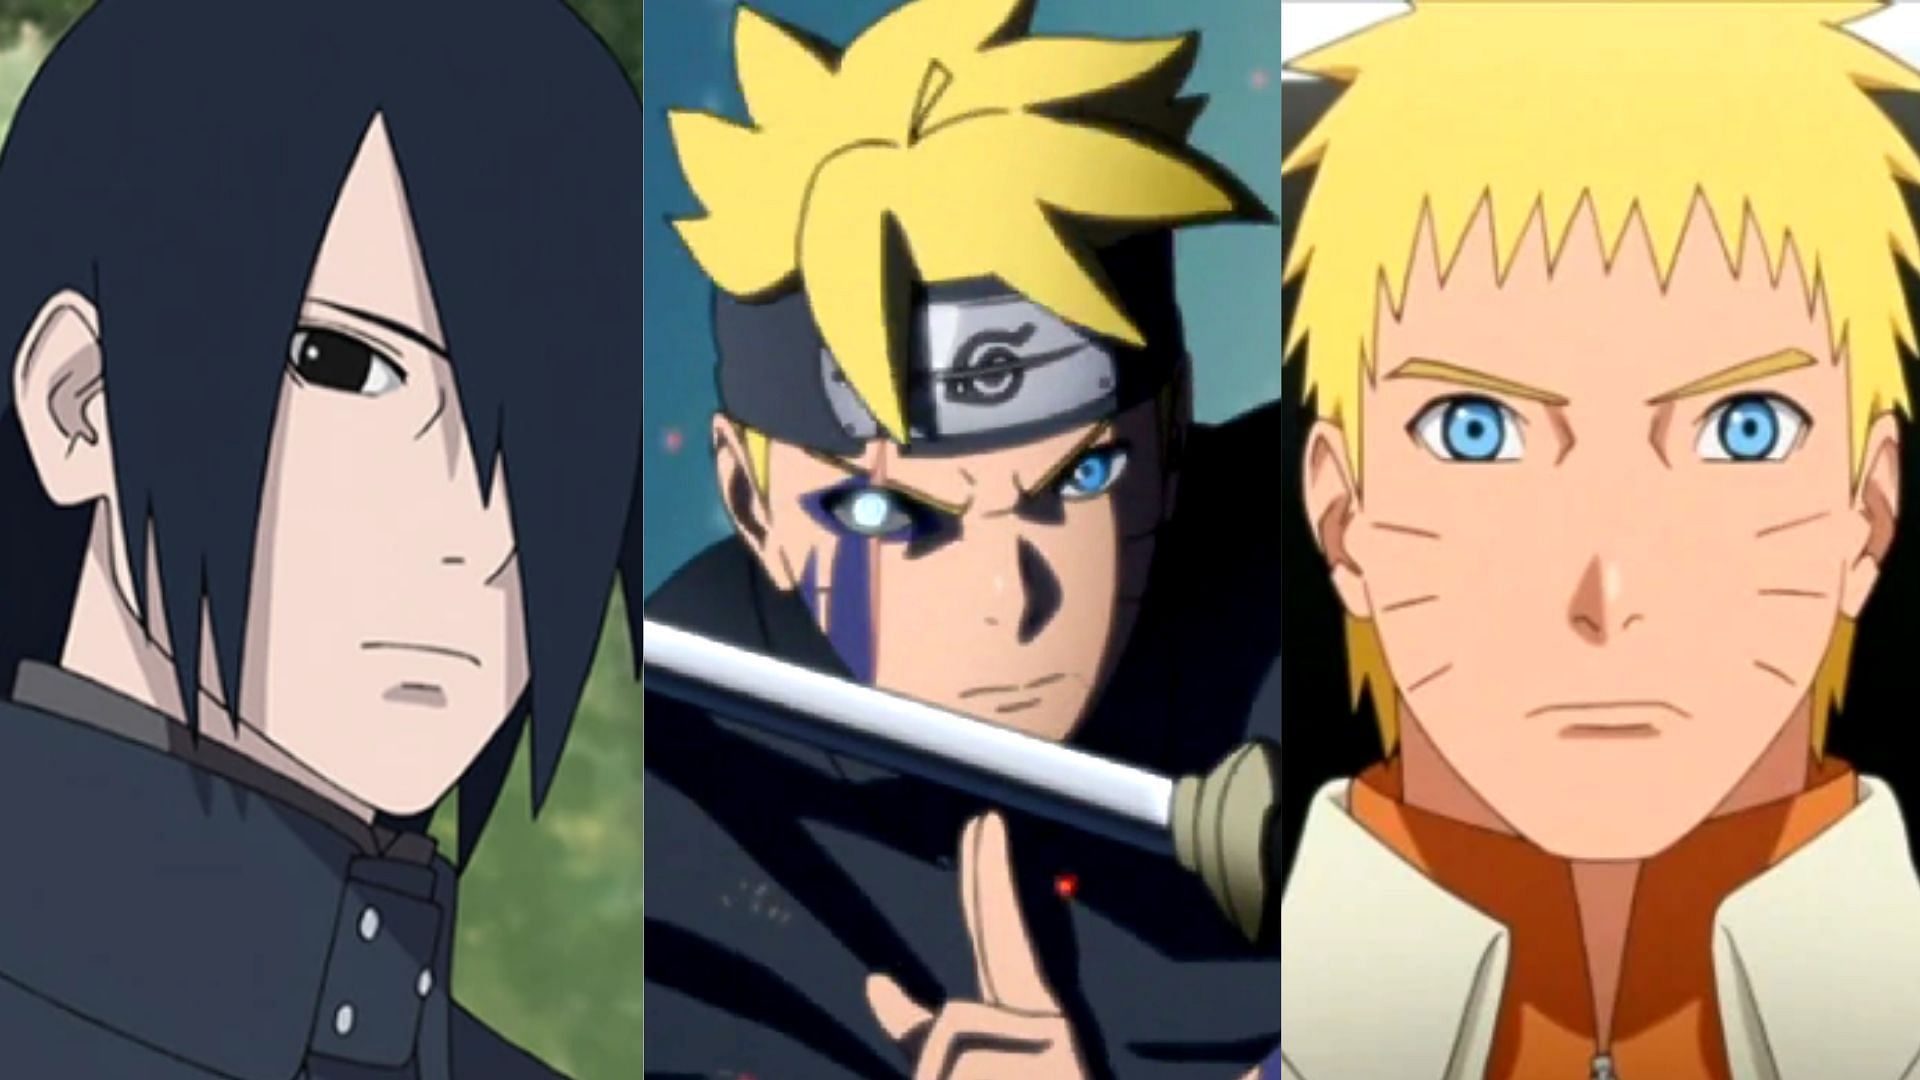 Sasuke Uchiha, Boruto and Naruto Uzumaki as seen in Boruto: Naruto Next Generations (Image via Pierrot)